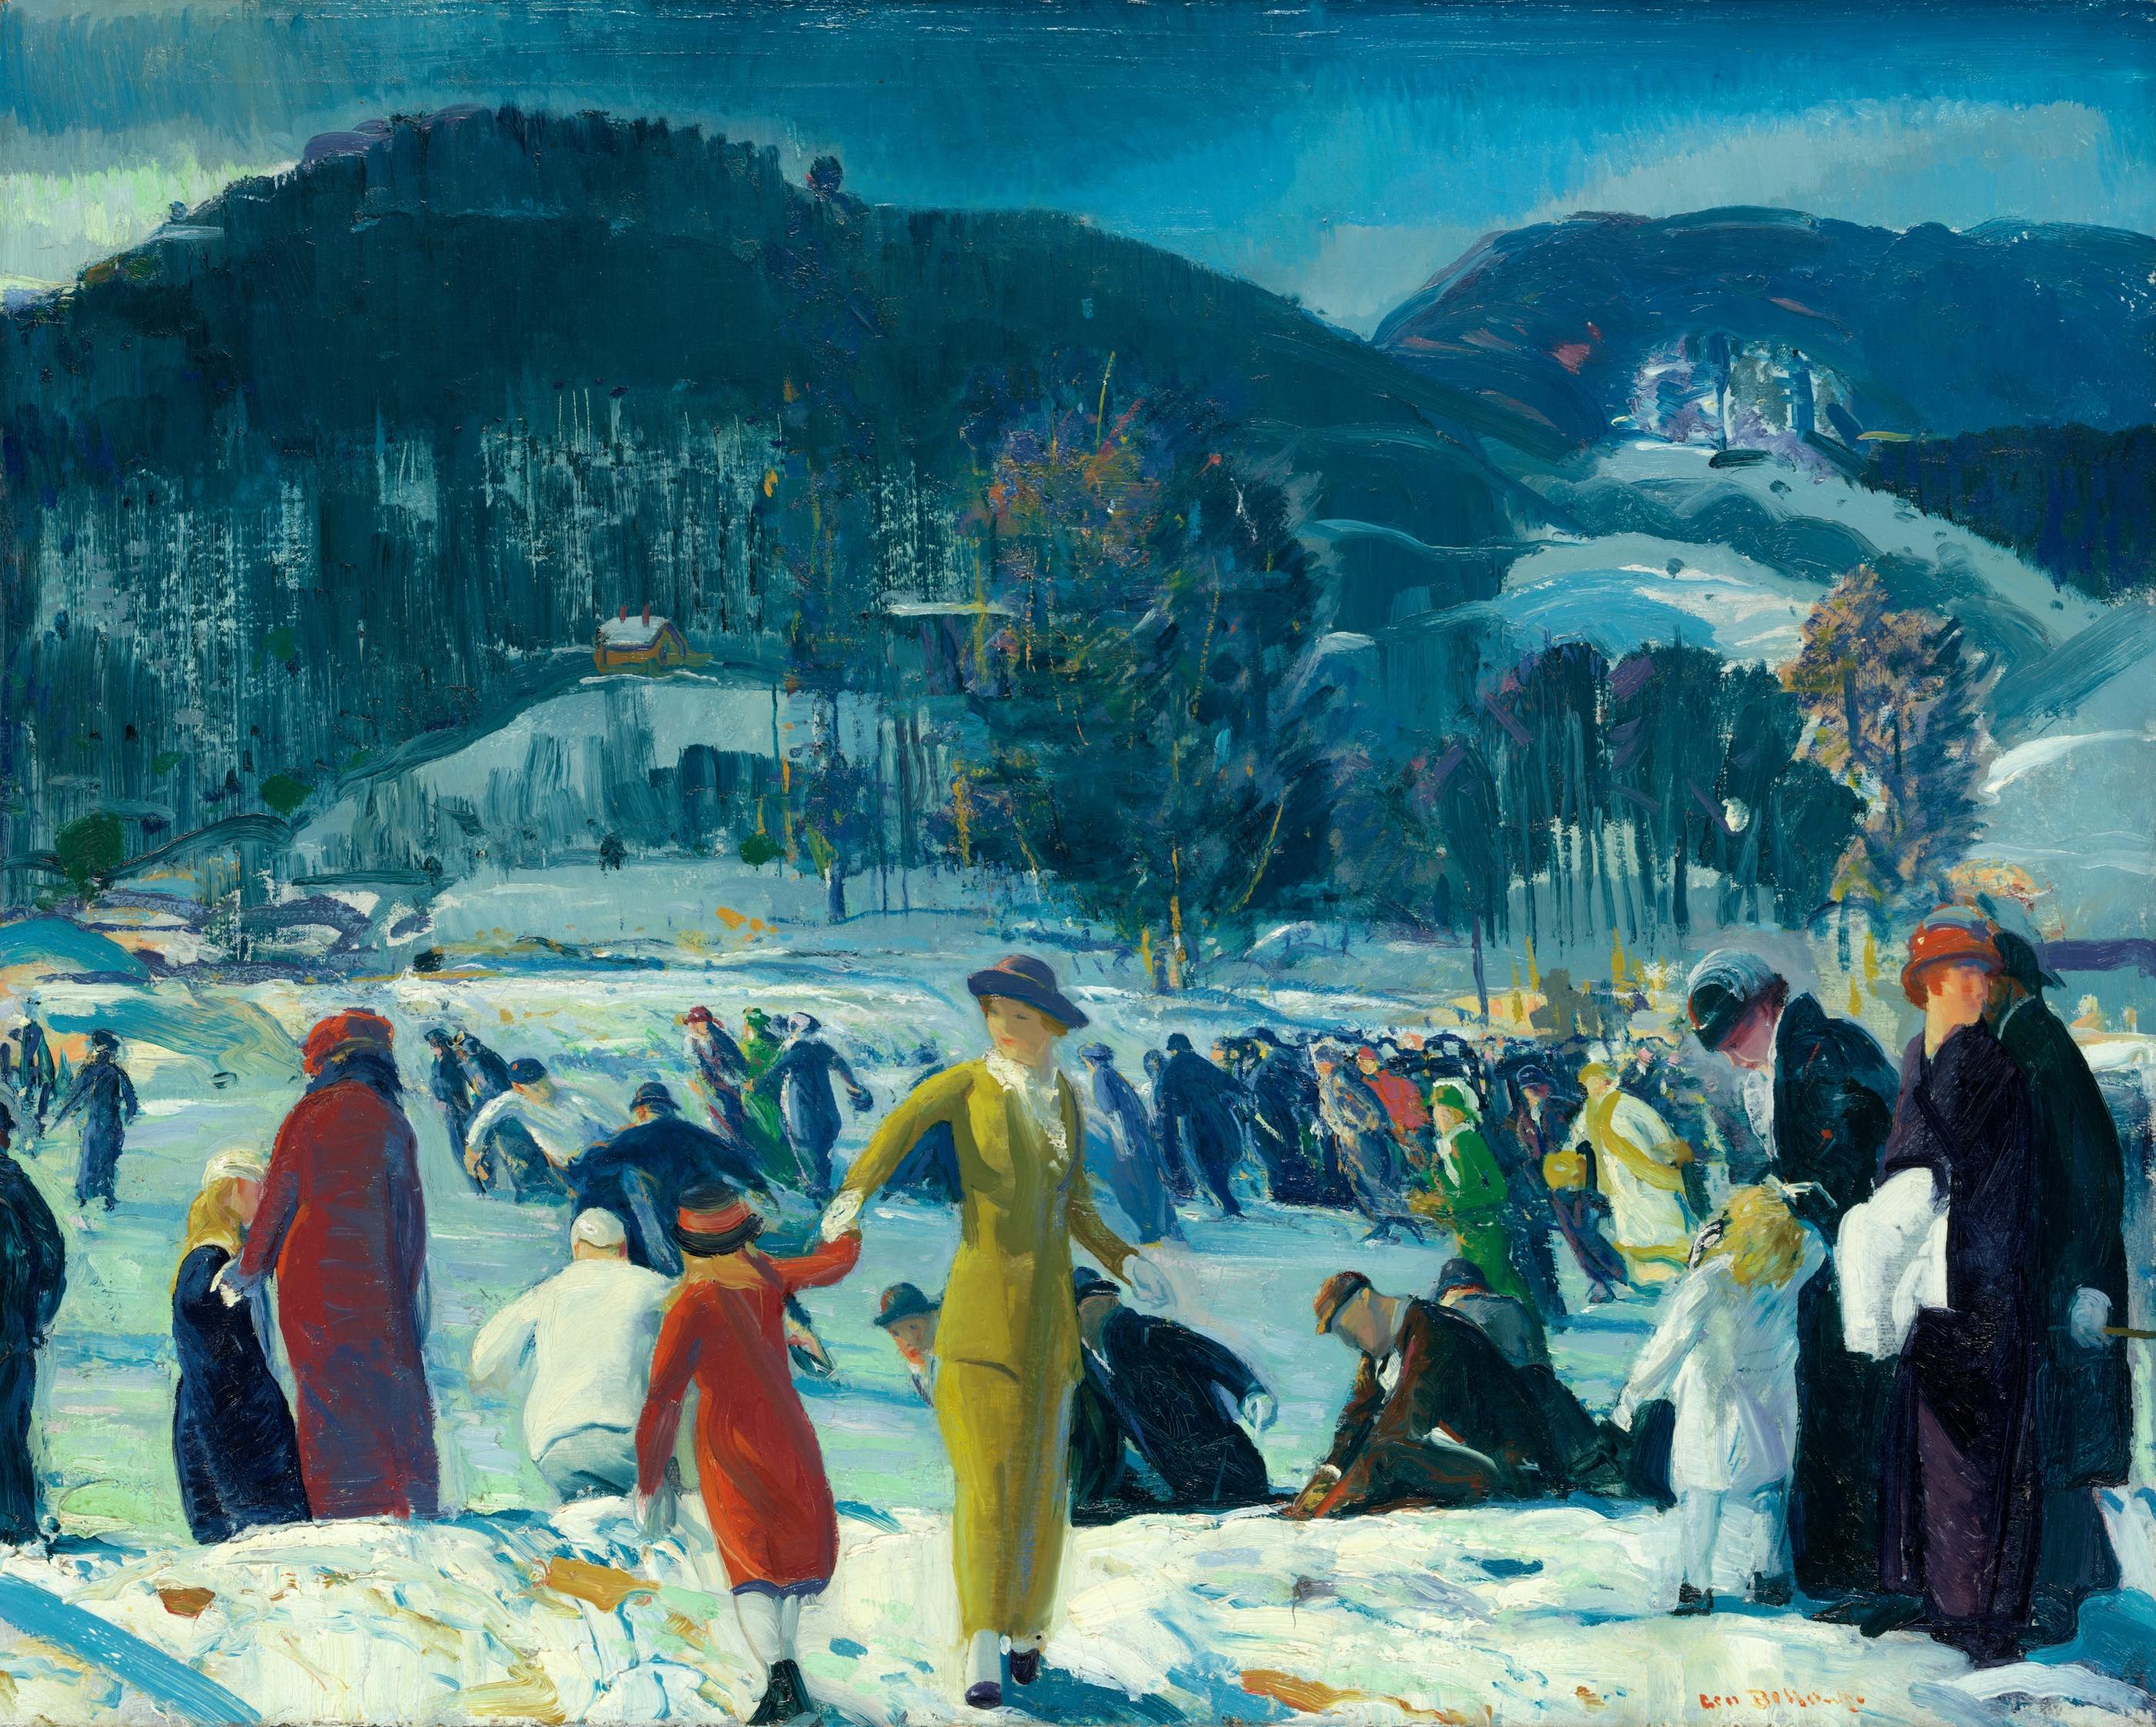 冬日之恋 by 乔治 贝洛斯 - 1914 - 81.6 × 101.6 cm 芝加哥藝術博物館